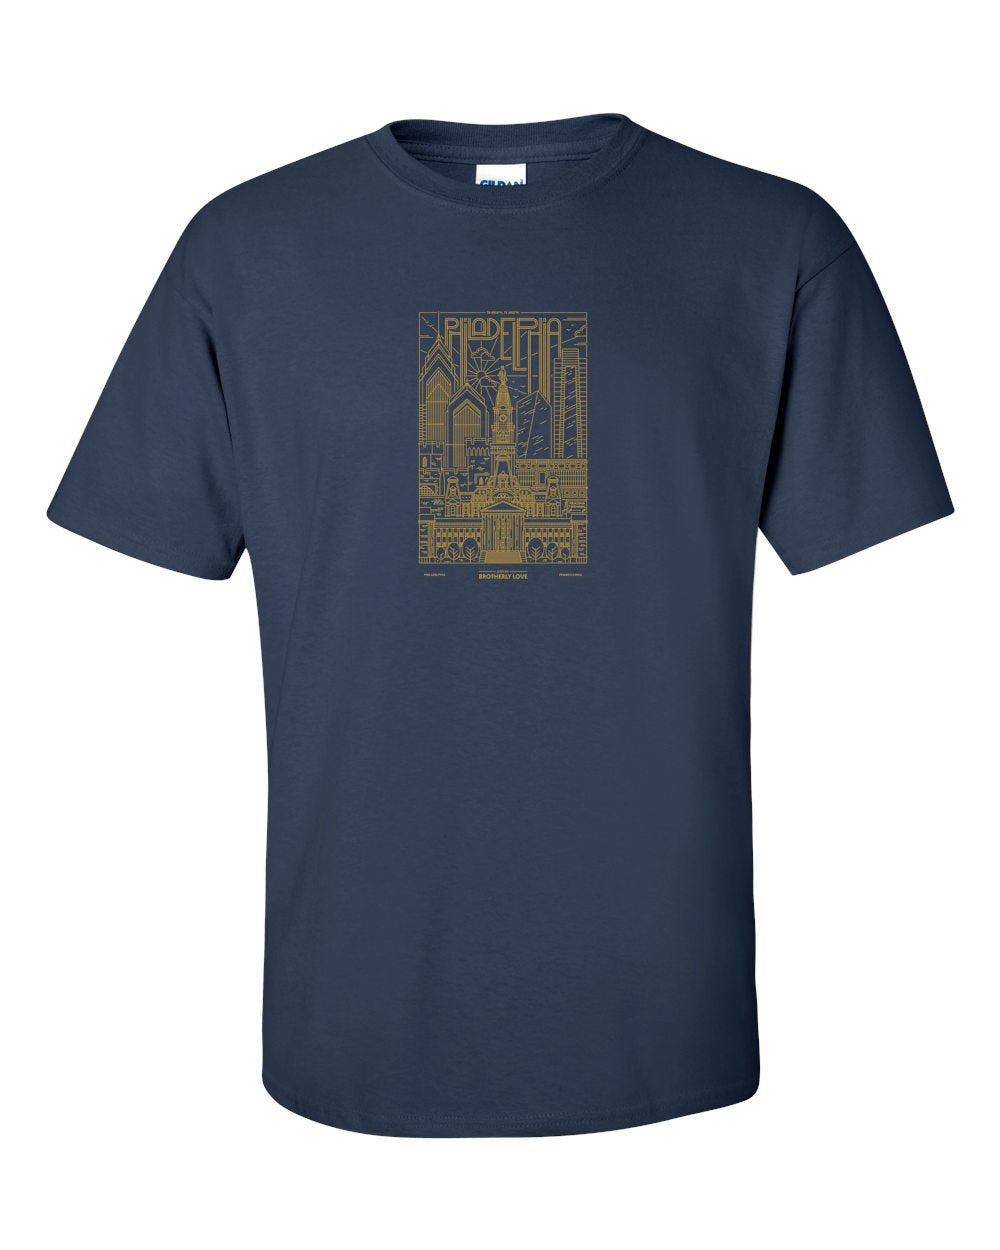 Philadelphia Skyline V2 (Soccer) Mens/Unisex T-Shirt